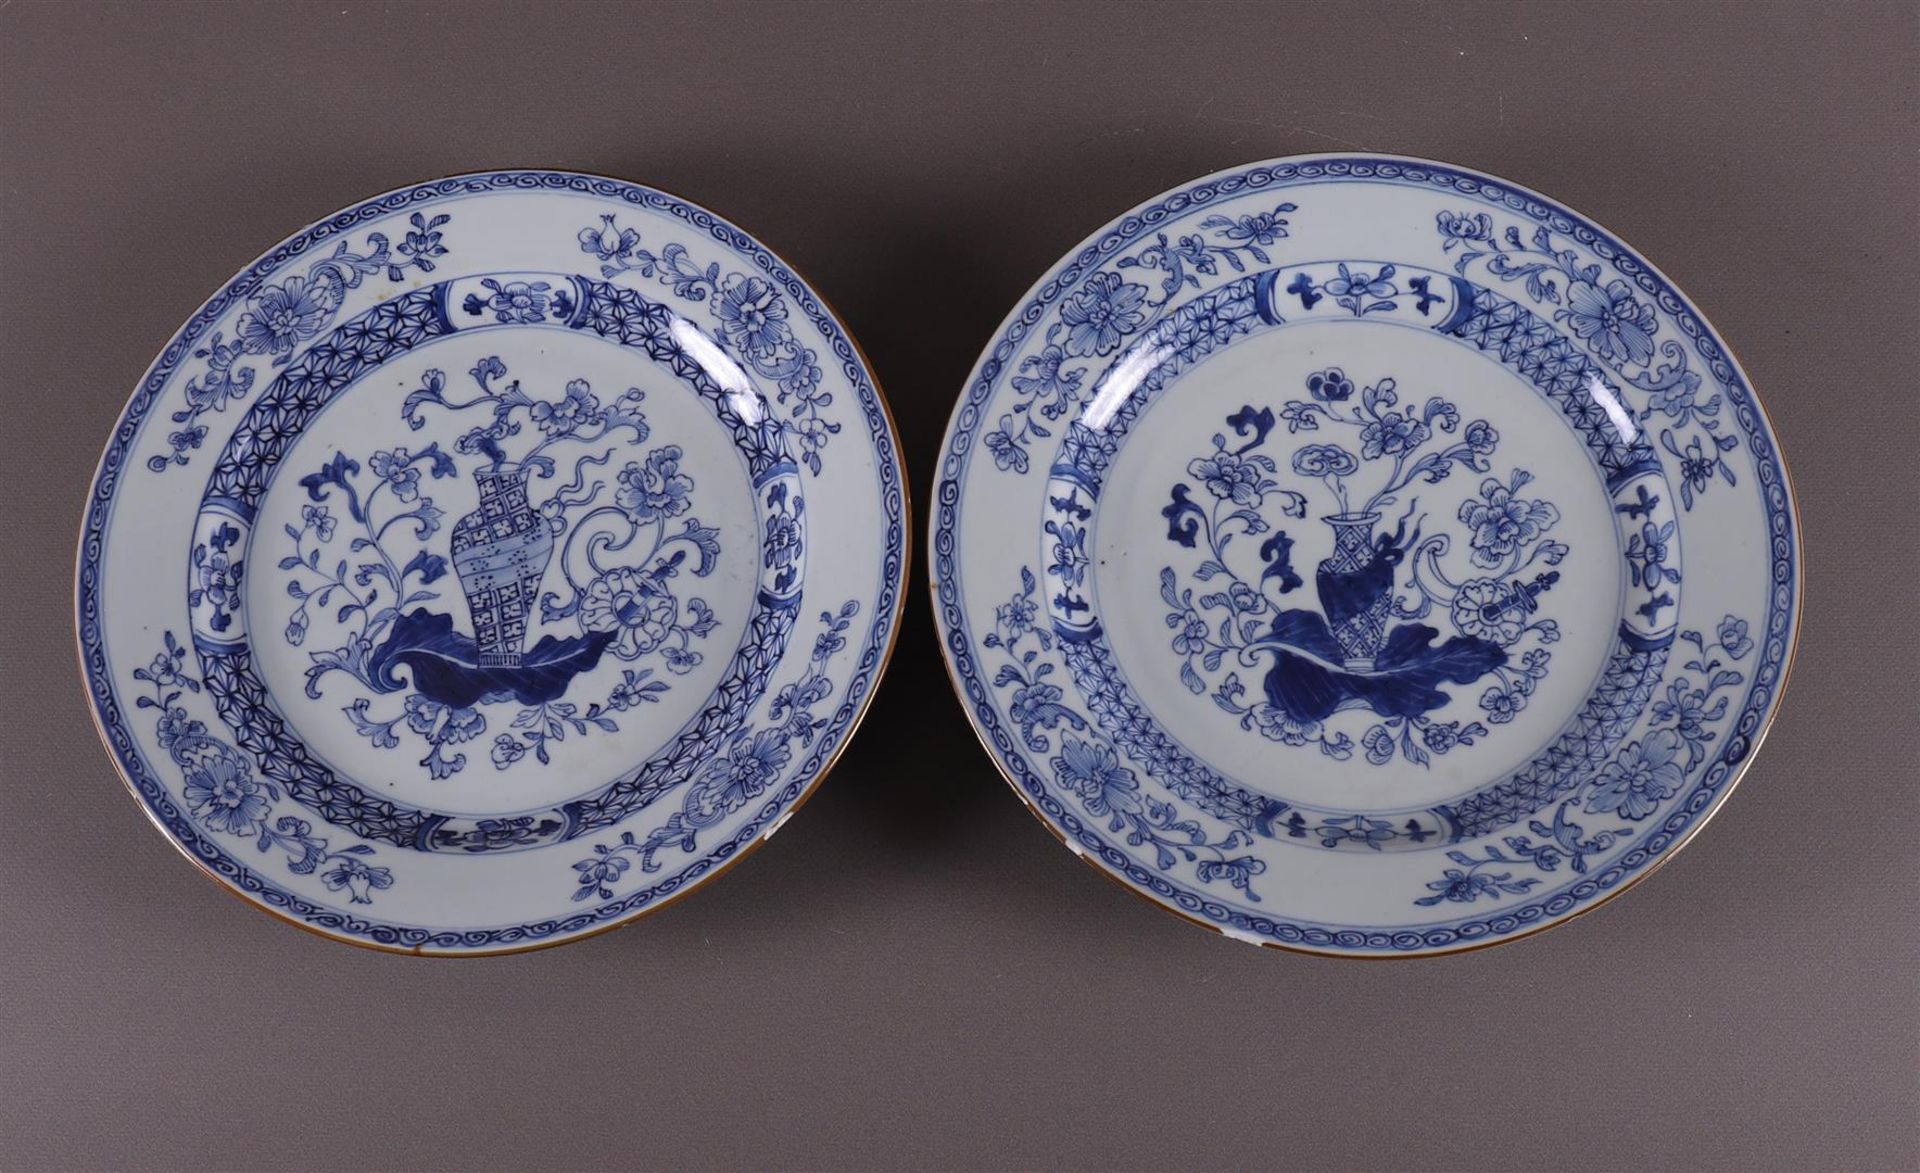 A set of blue/white porcelain dishes, China, Kangxi, early 18th century. Blue underglaze decor of